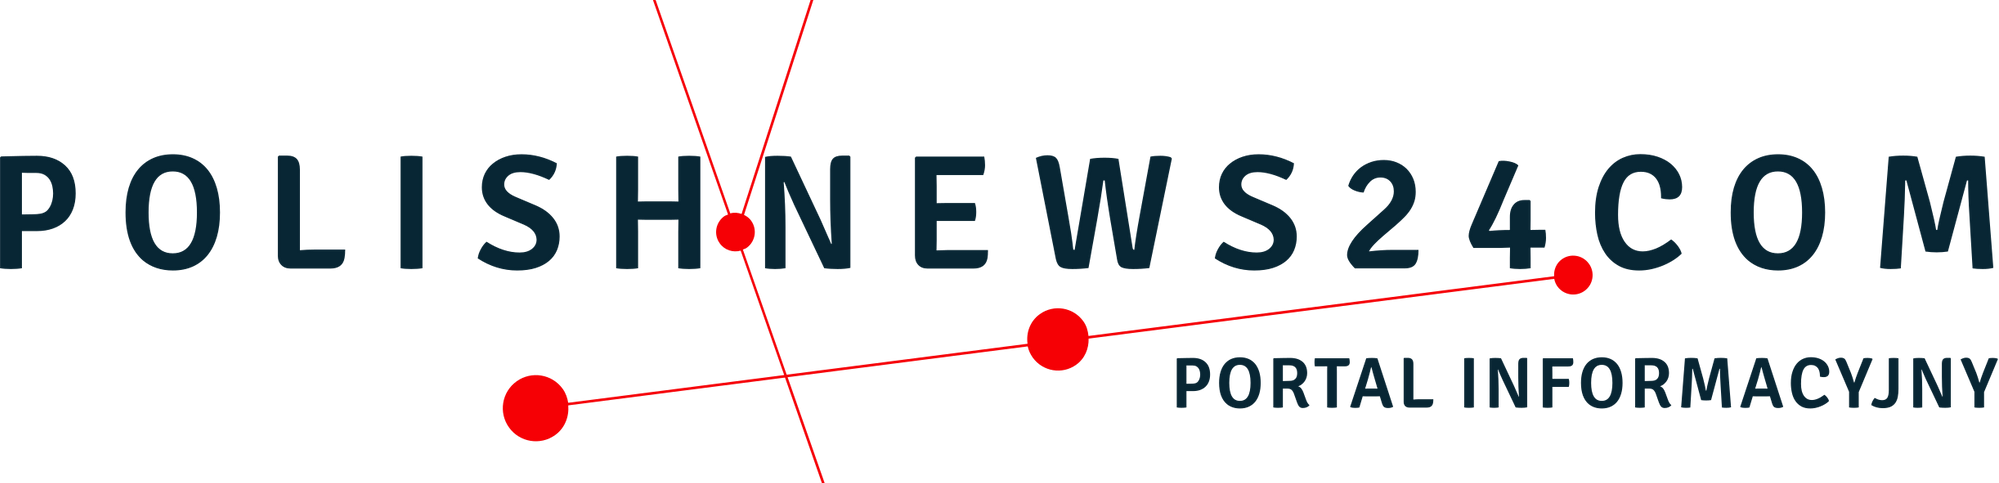 Polski, informacyjny portal polonijny Polish News 24 .com